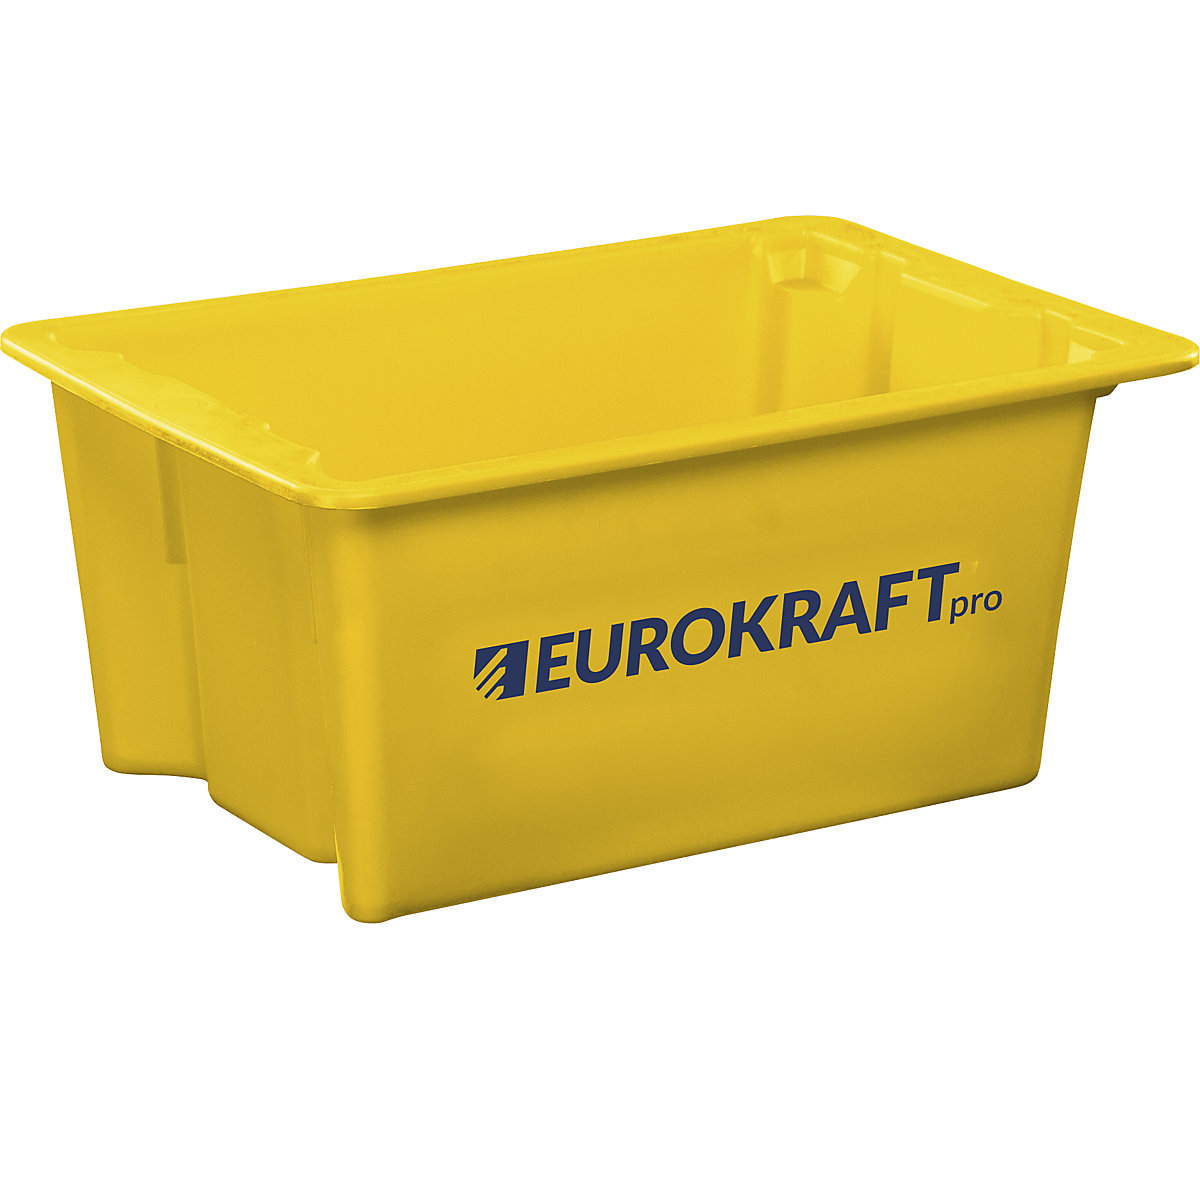 EUROKRAFTpro – Zasučna posoda za zlaganje iz polipropilena, primernega za živila, prostornina 6 l, DE 4 kosi, stene in dno zaprti, rumena